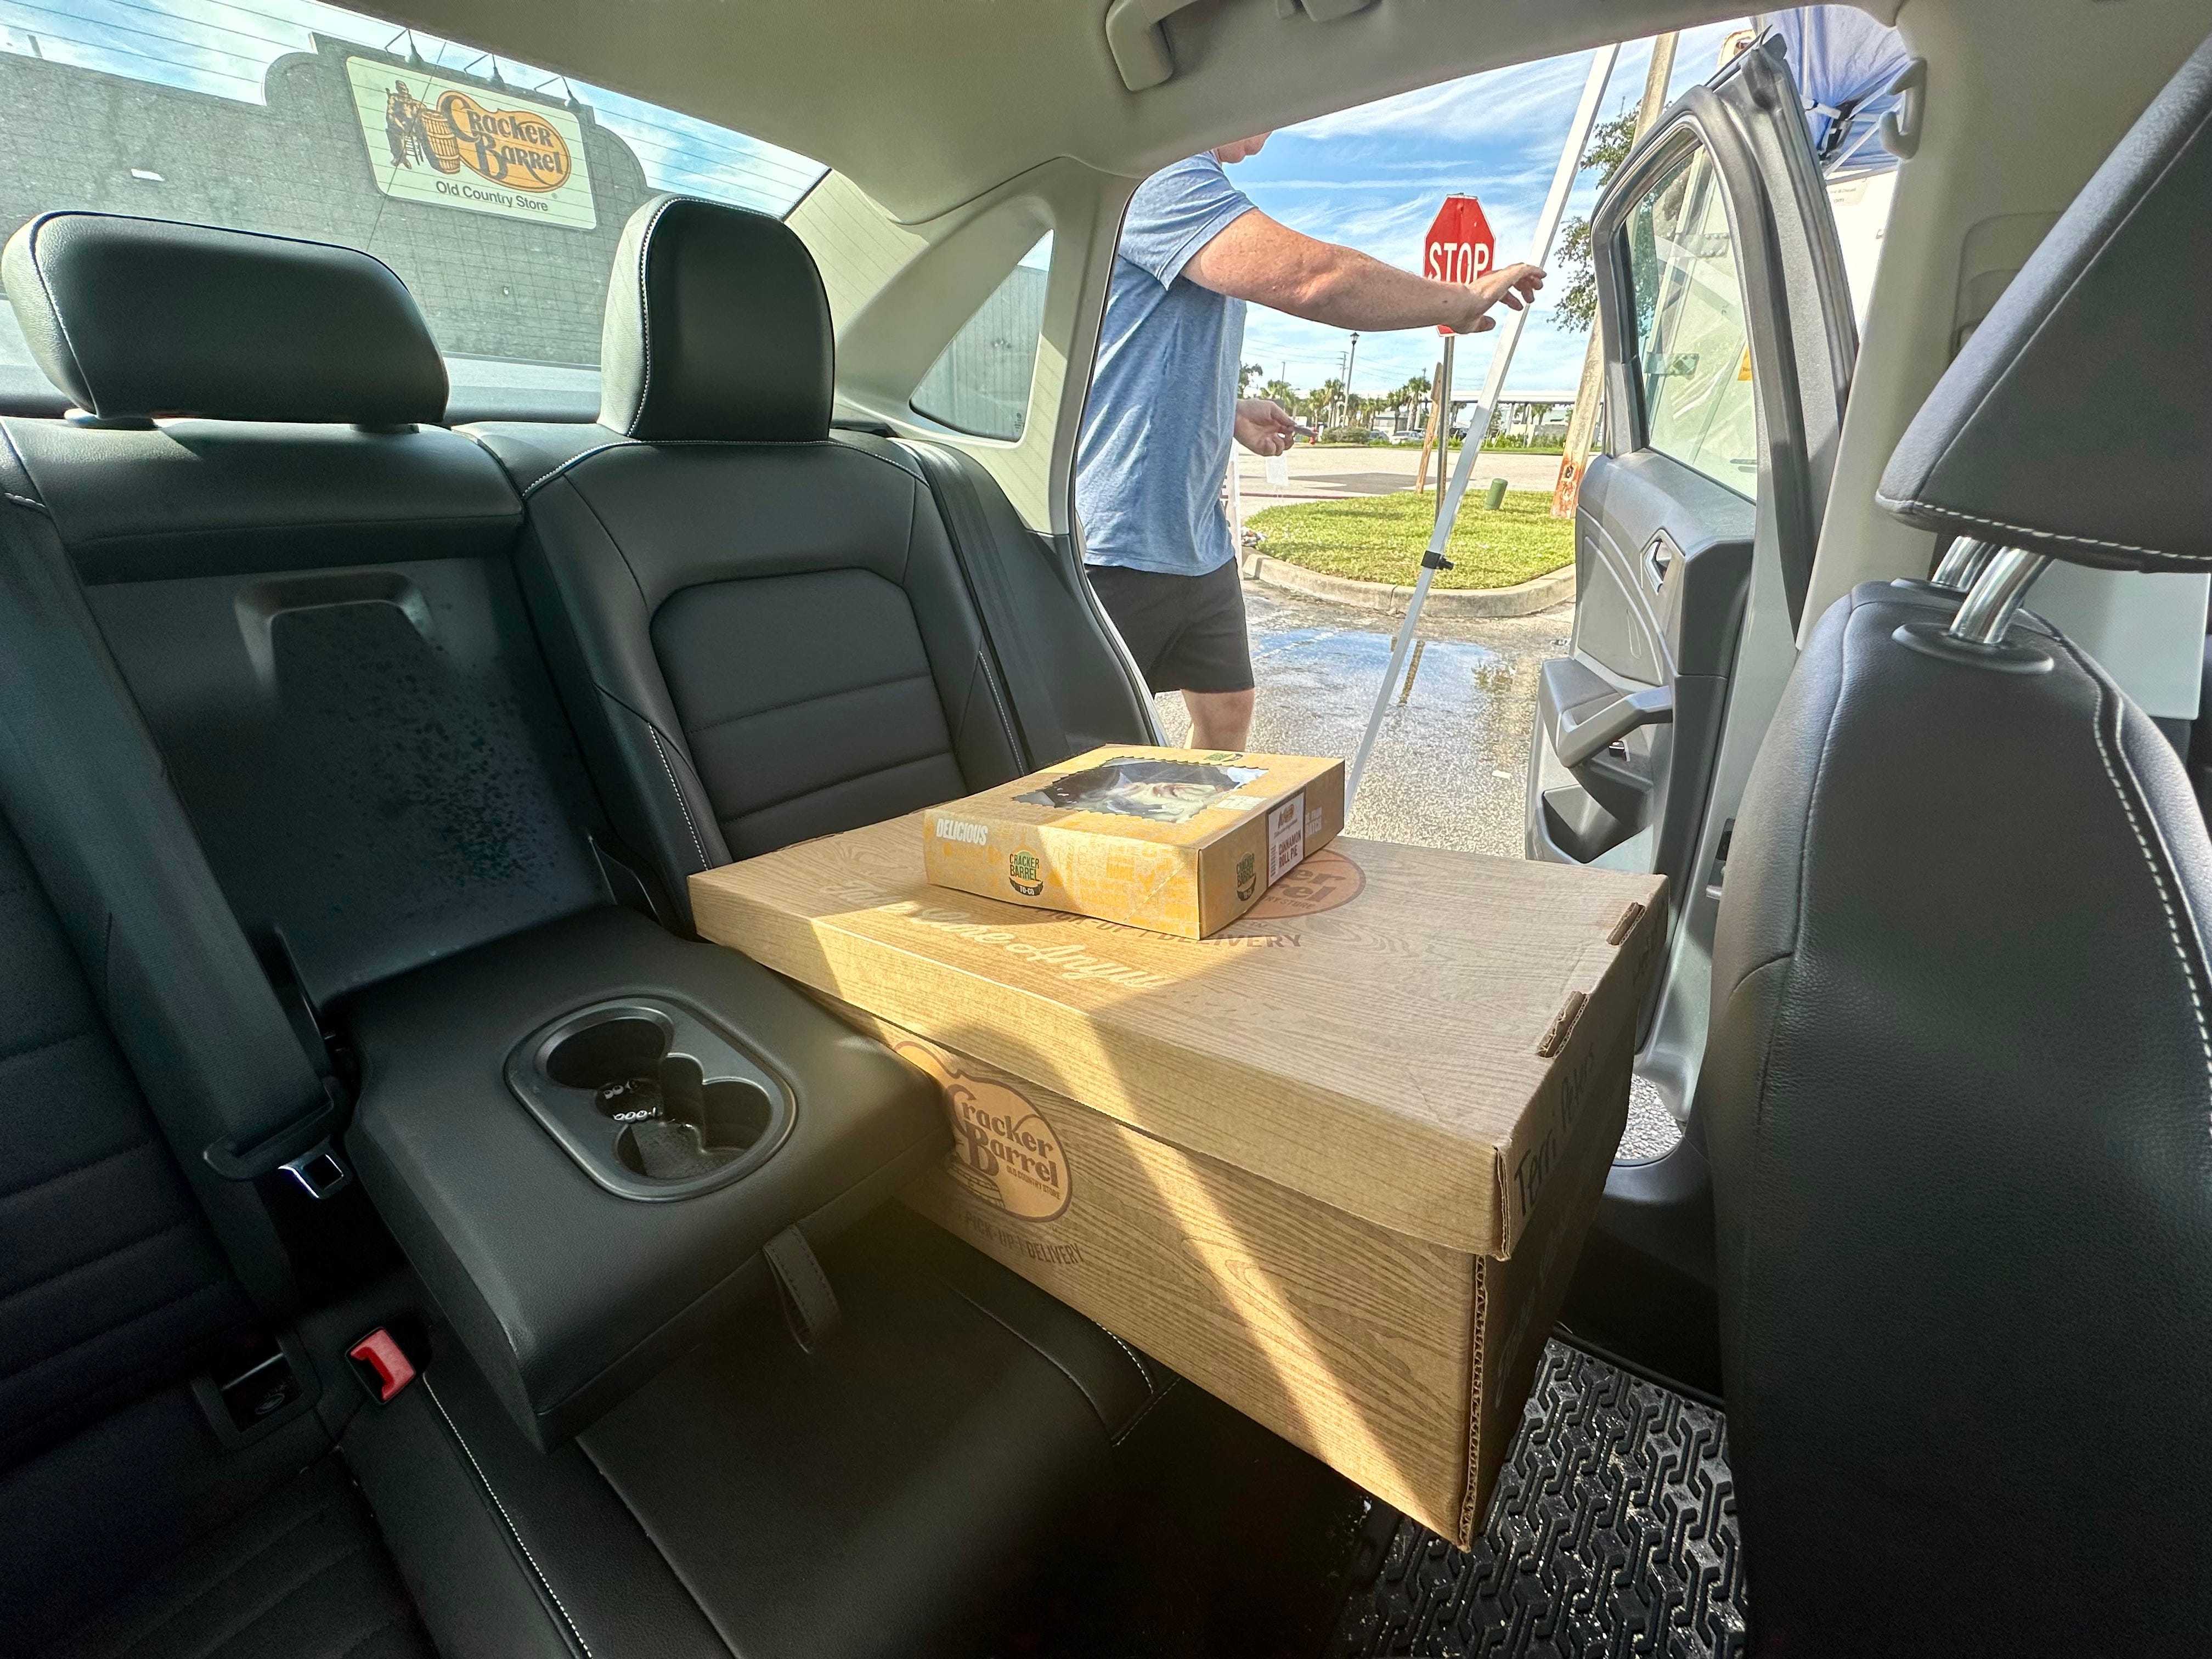 Große Cracker-Fass-Box mit kleinerer Box oben auf dem Rücksitz eines Autos, während ein Mann die Autotür schließt